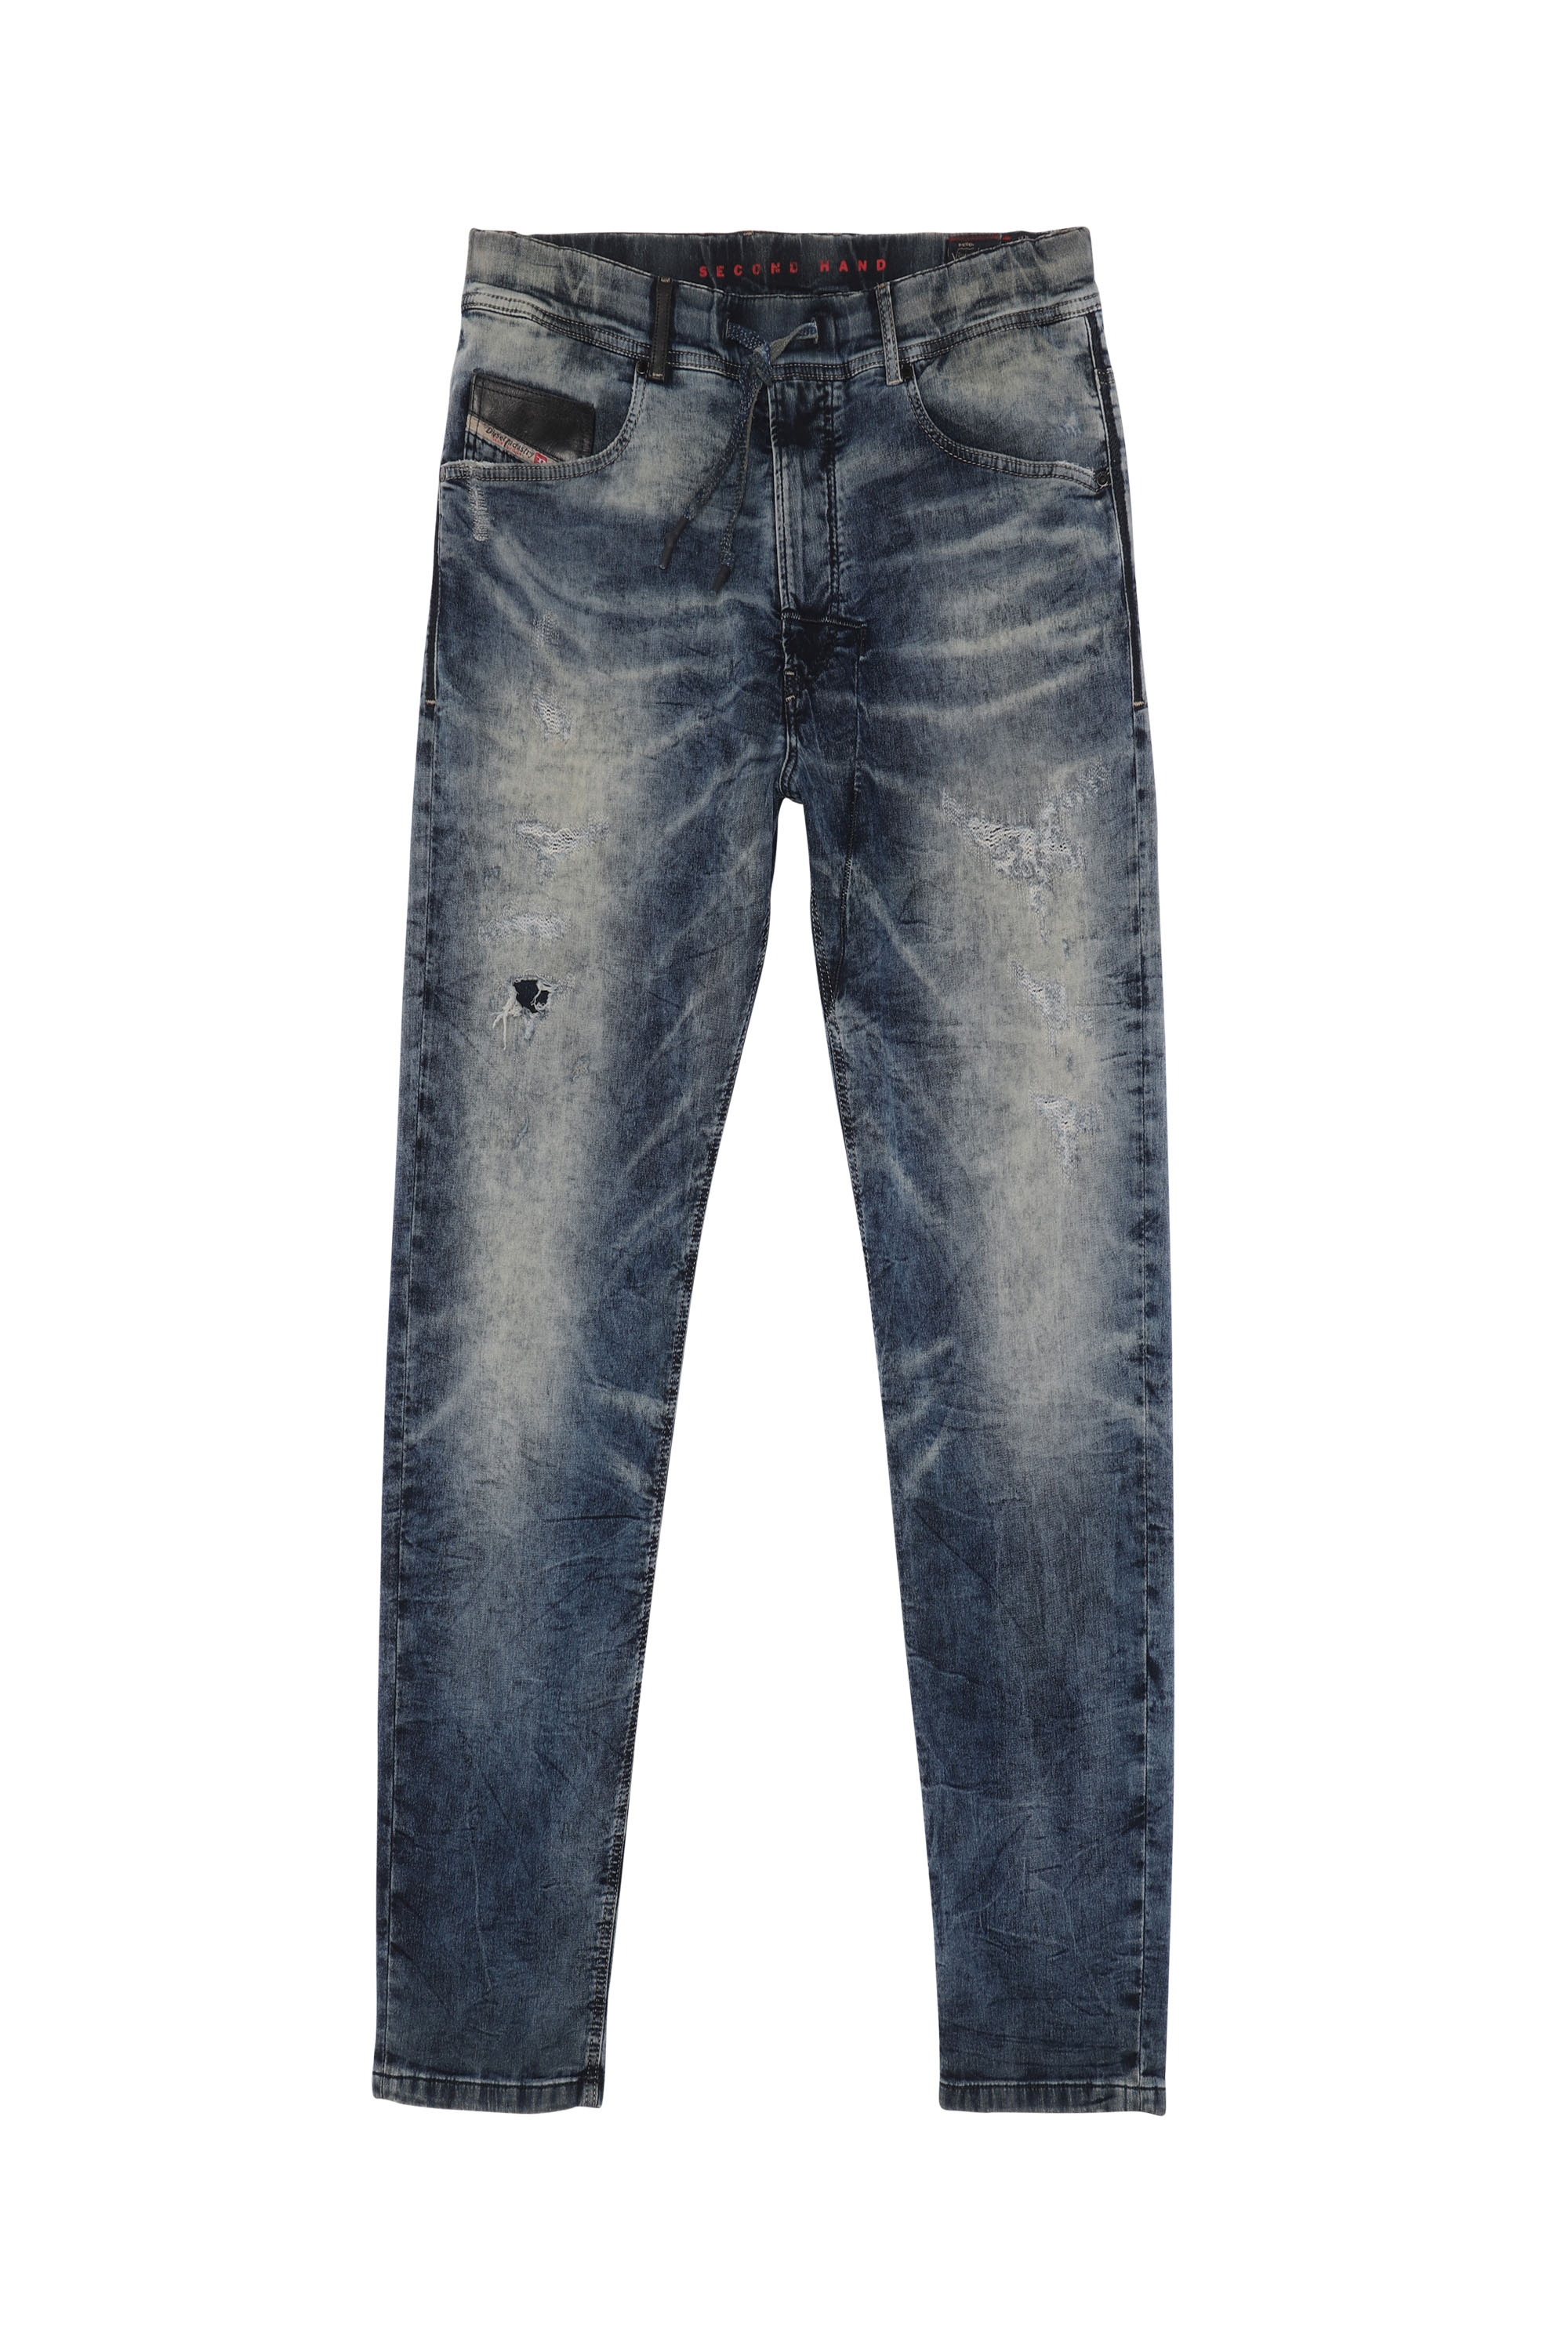 NARROT JoggJeans®, Dunkelblau - Jeans